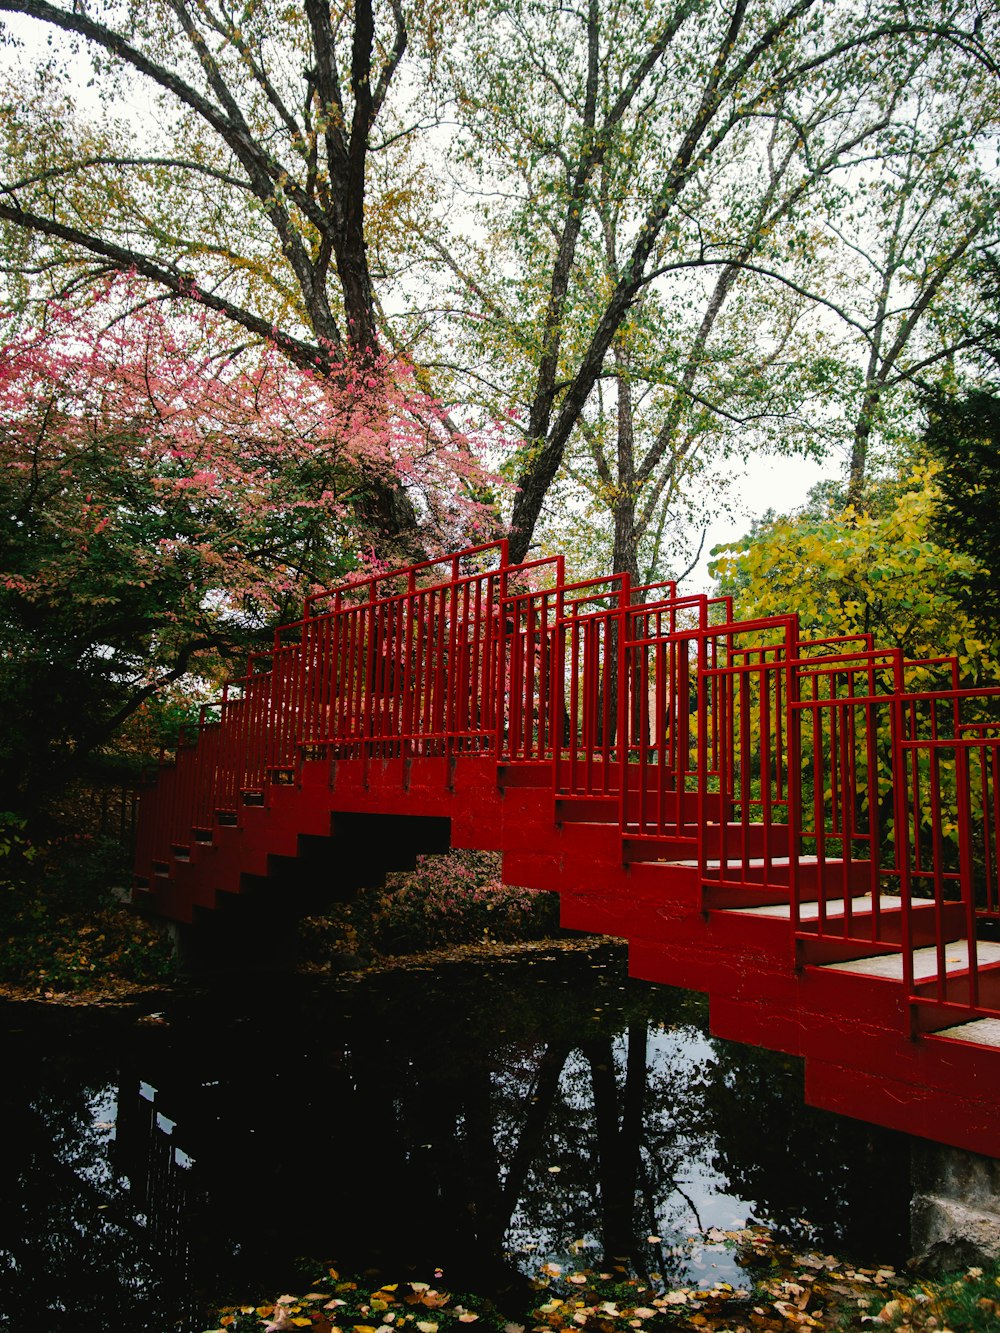 Puente rojo sobre el río rodeado de árboles